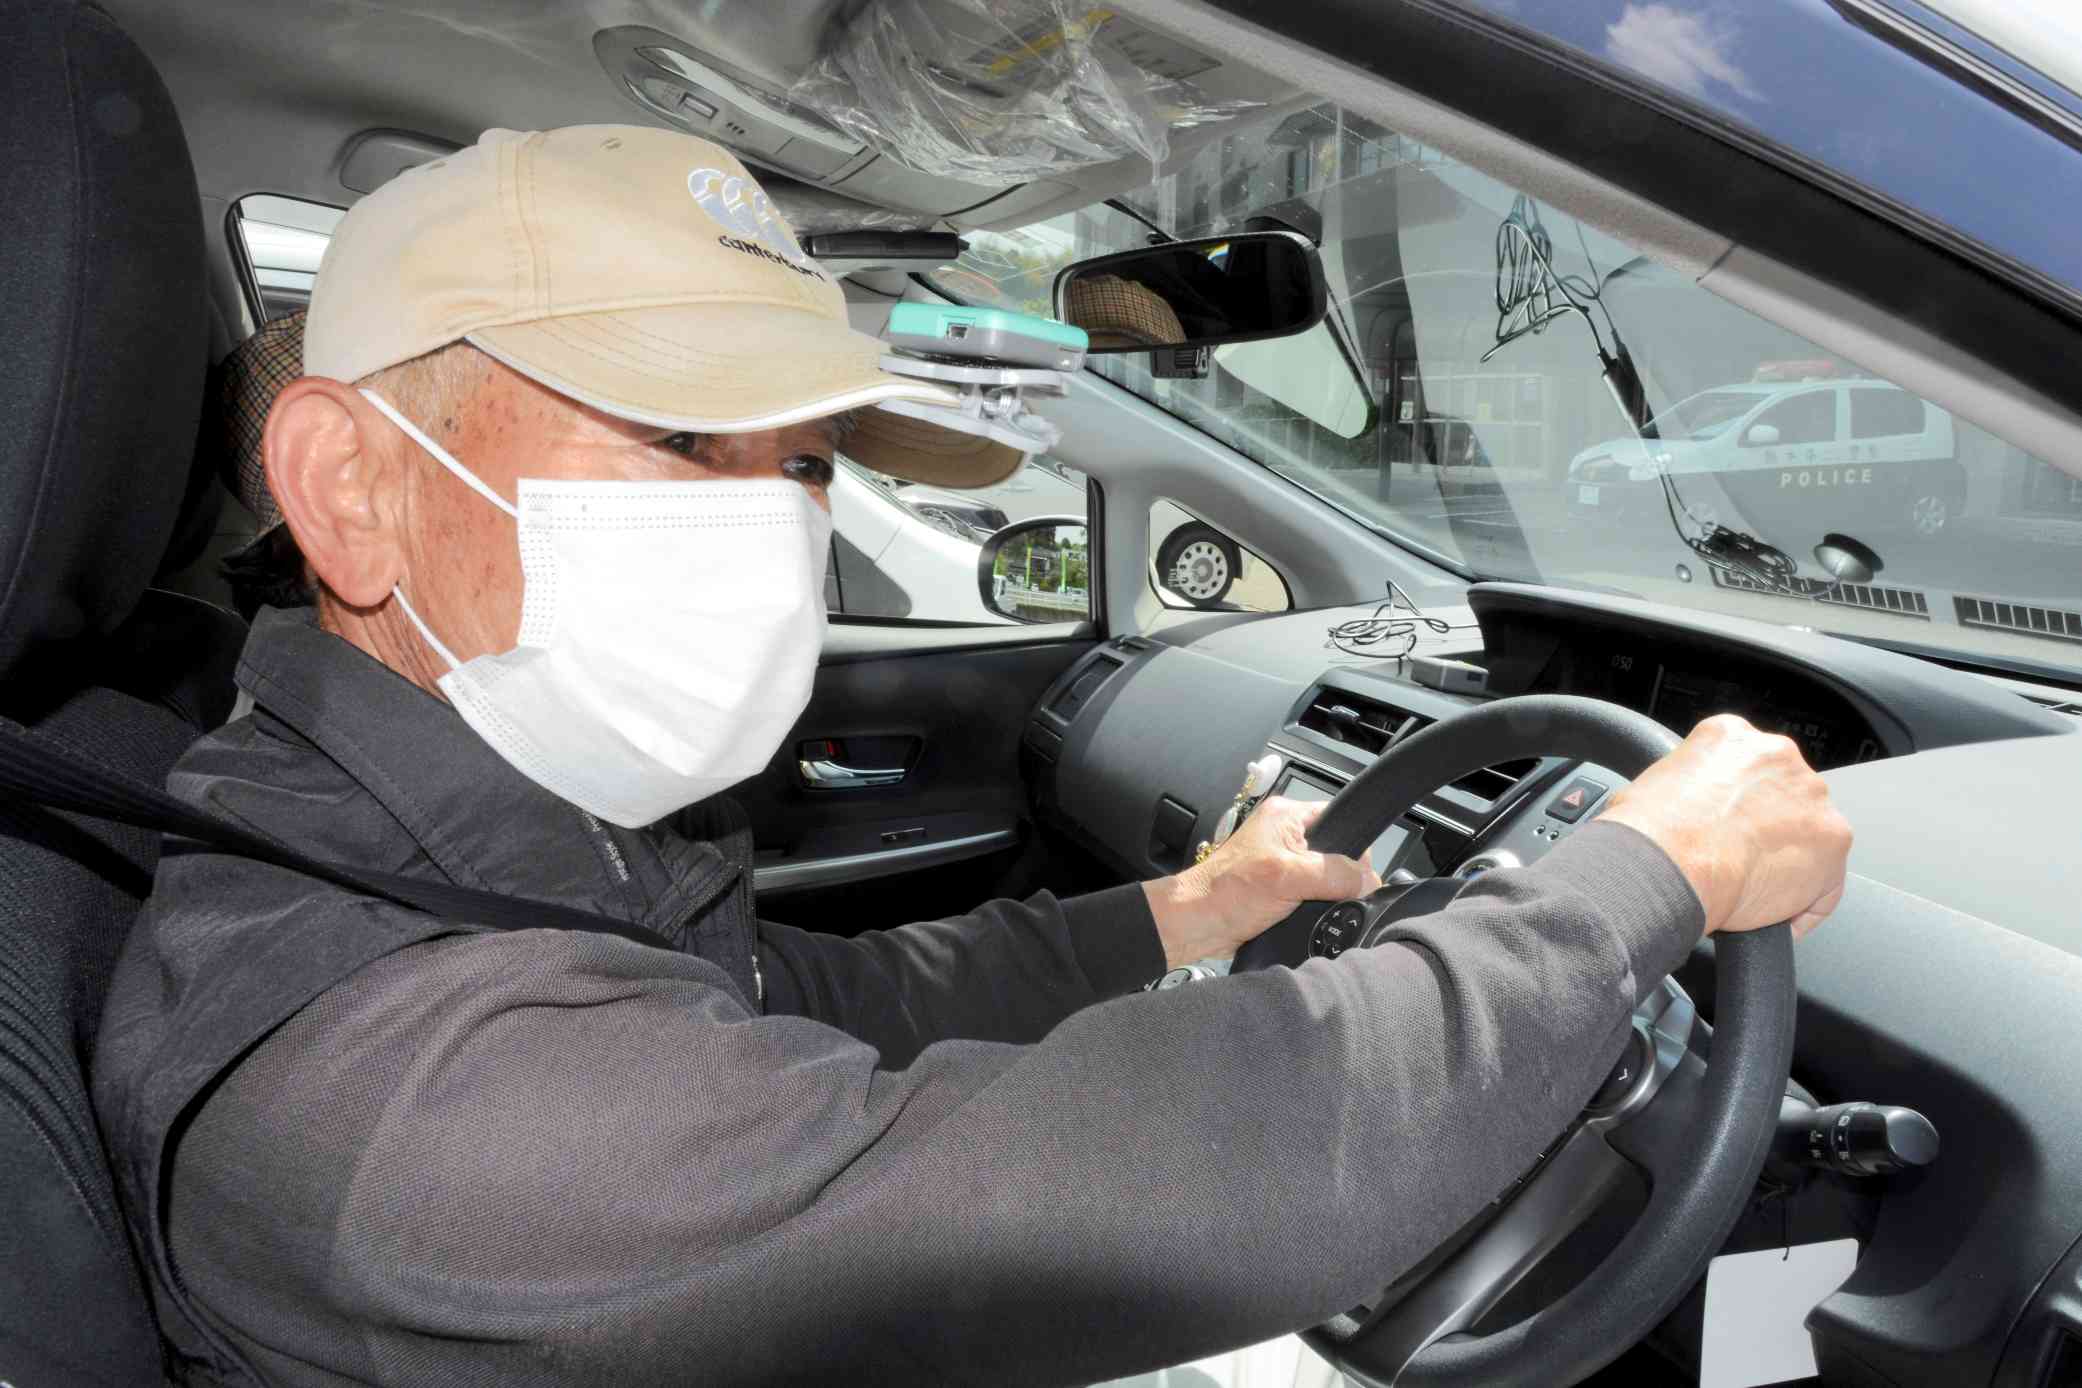 運転技能自動評価システムで運転動作を測定する高齢者。帽子のつばにセンサーを付けている＝人吉市